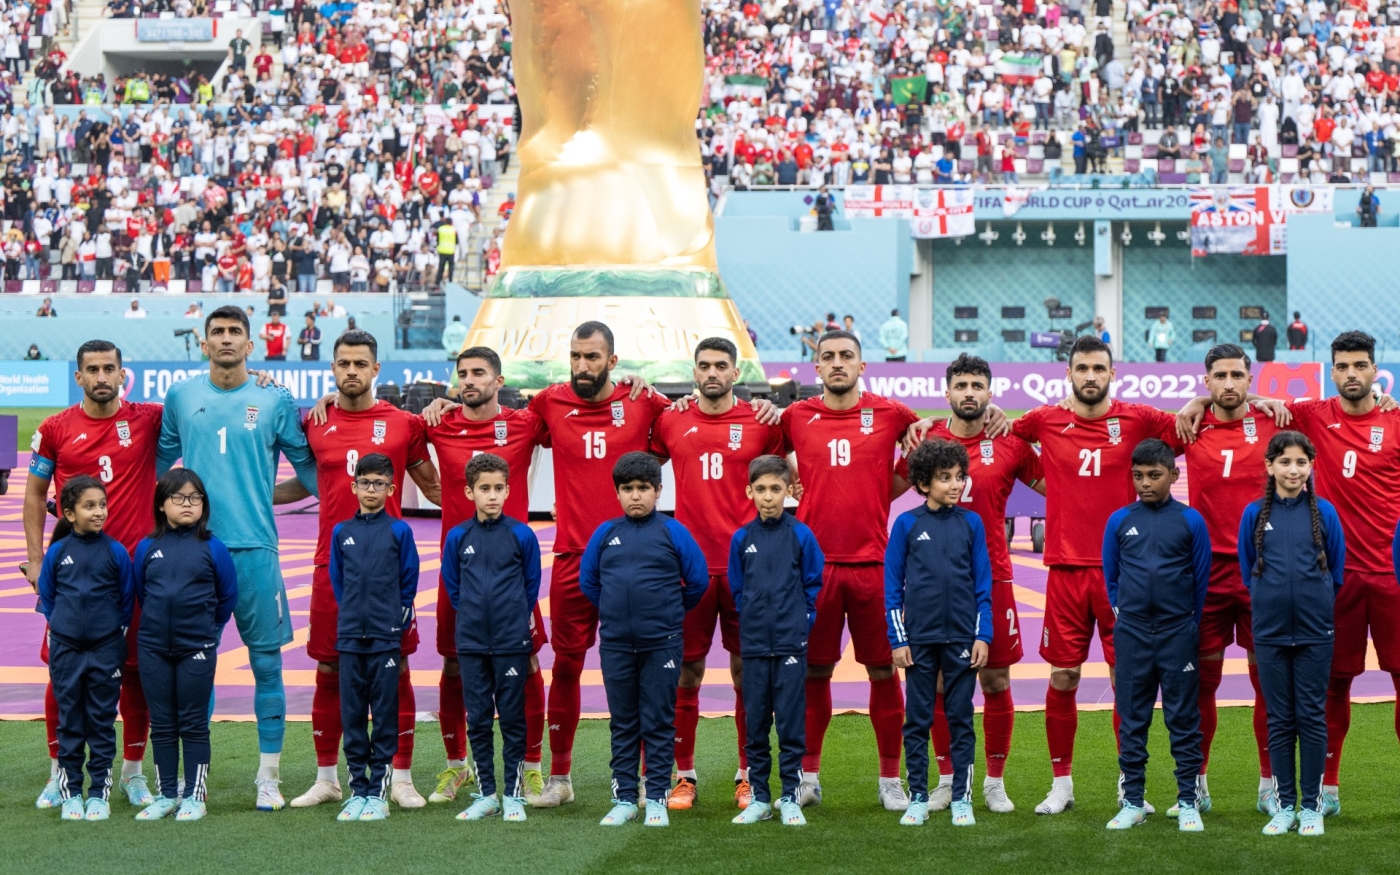 Le 21 novembre, les joueurs iraniens ont choisi de ne pas chanter leur hymne national avant leur match contre l’Angleterre (Reuters)